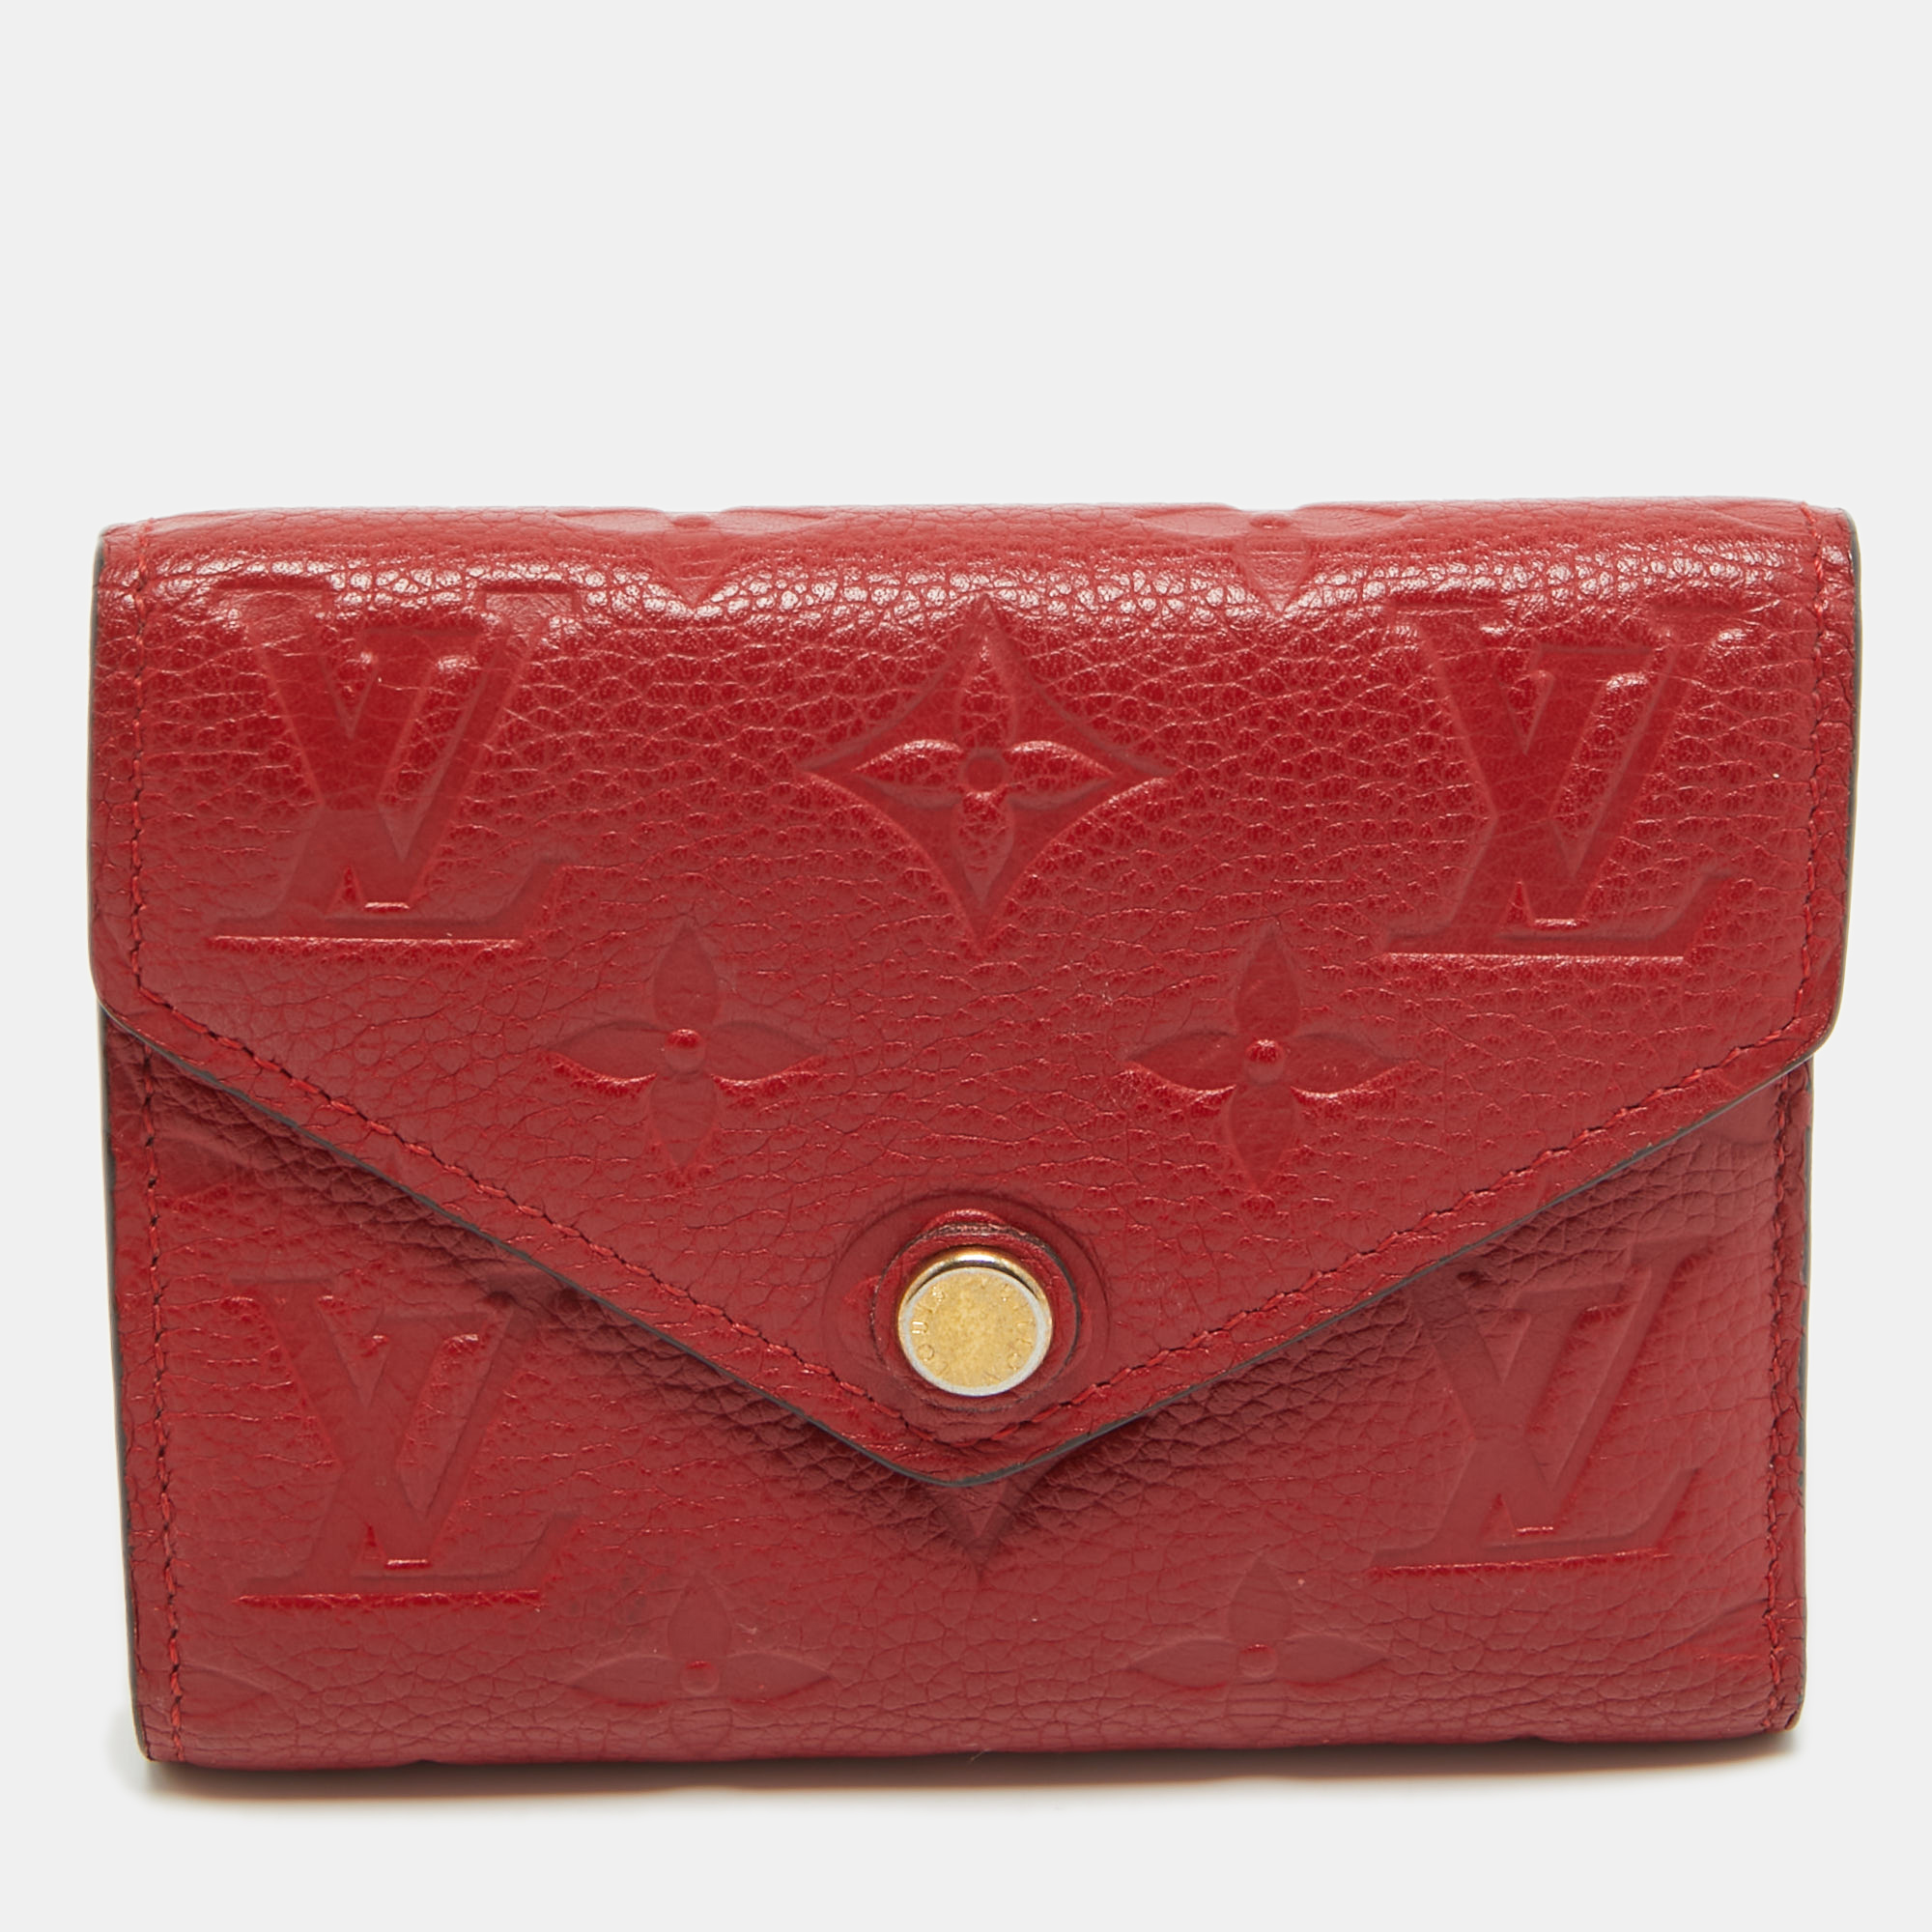 Louis vuitton cherry monogram empreinte leather compact curieuse wallet